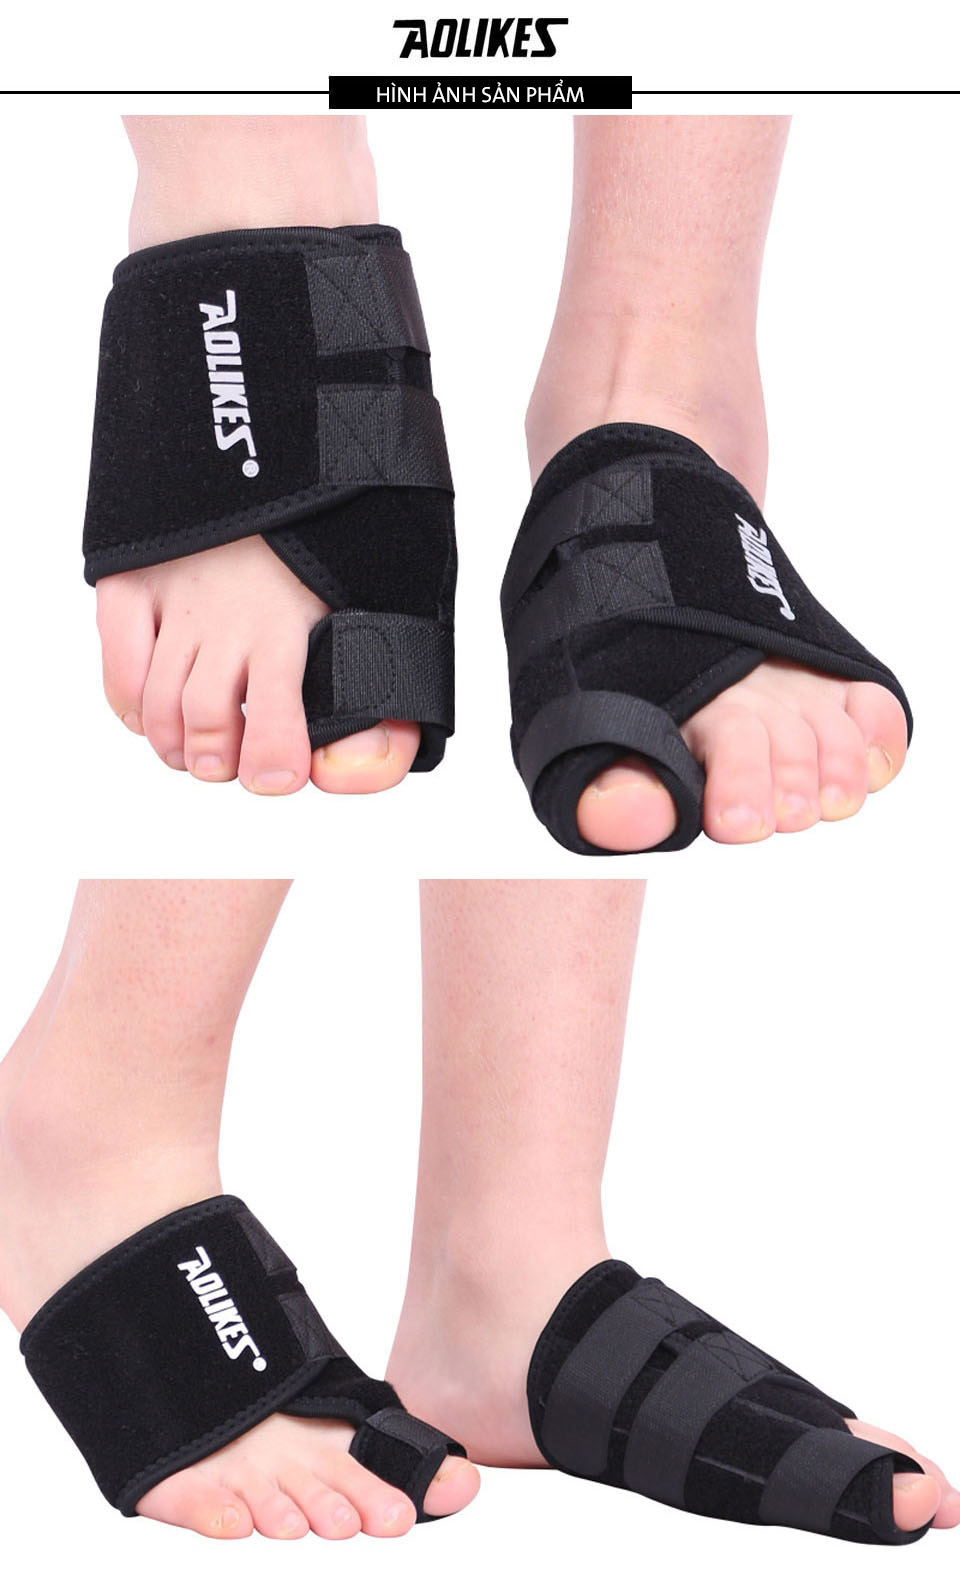 Hình ảnh đeo sản phẩm băng bảo vệ gang bàn chân 